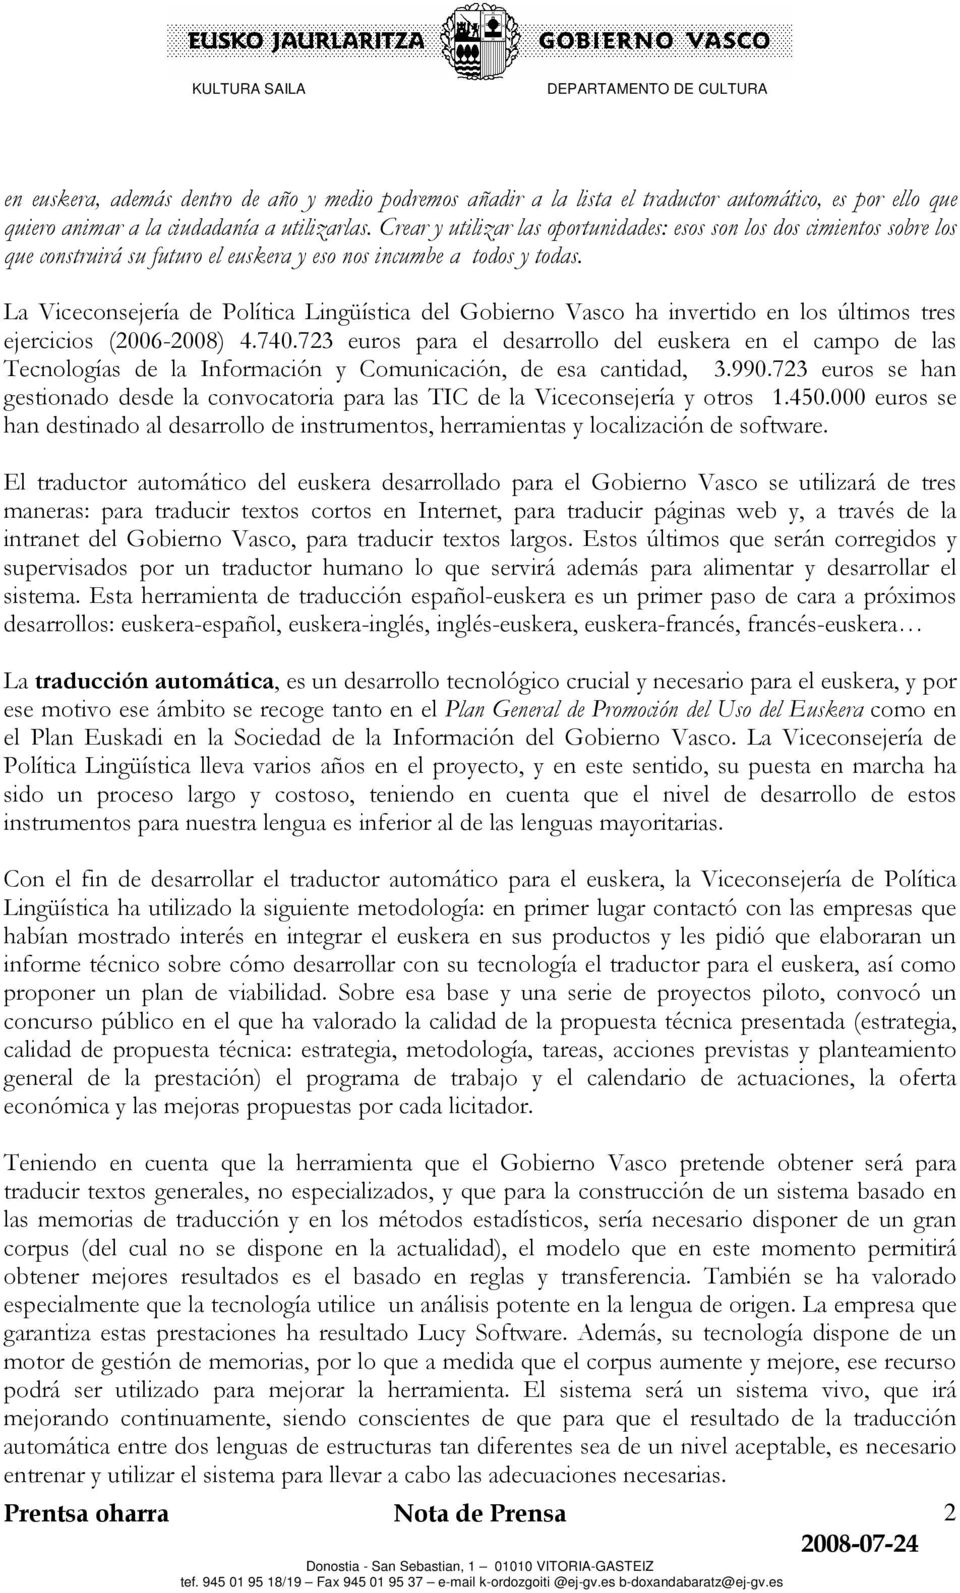 La Viceconsejería de Política Lingüística del Gobierno Vasco ha invertido en los últimos tres ejercicios (2006-2008) 4.740.